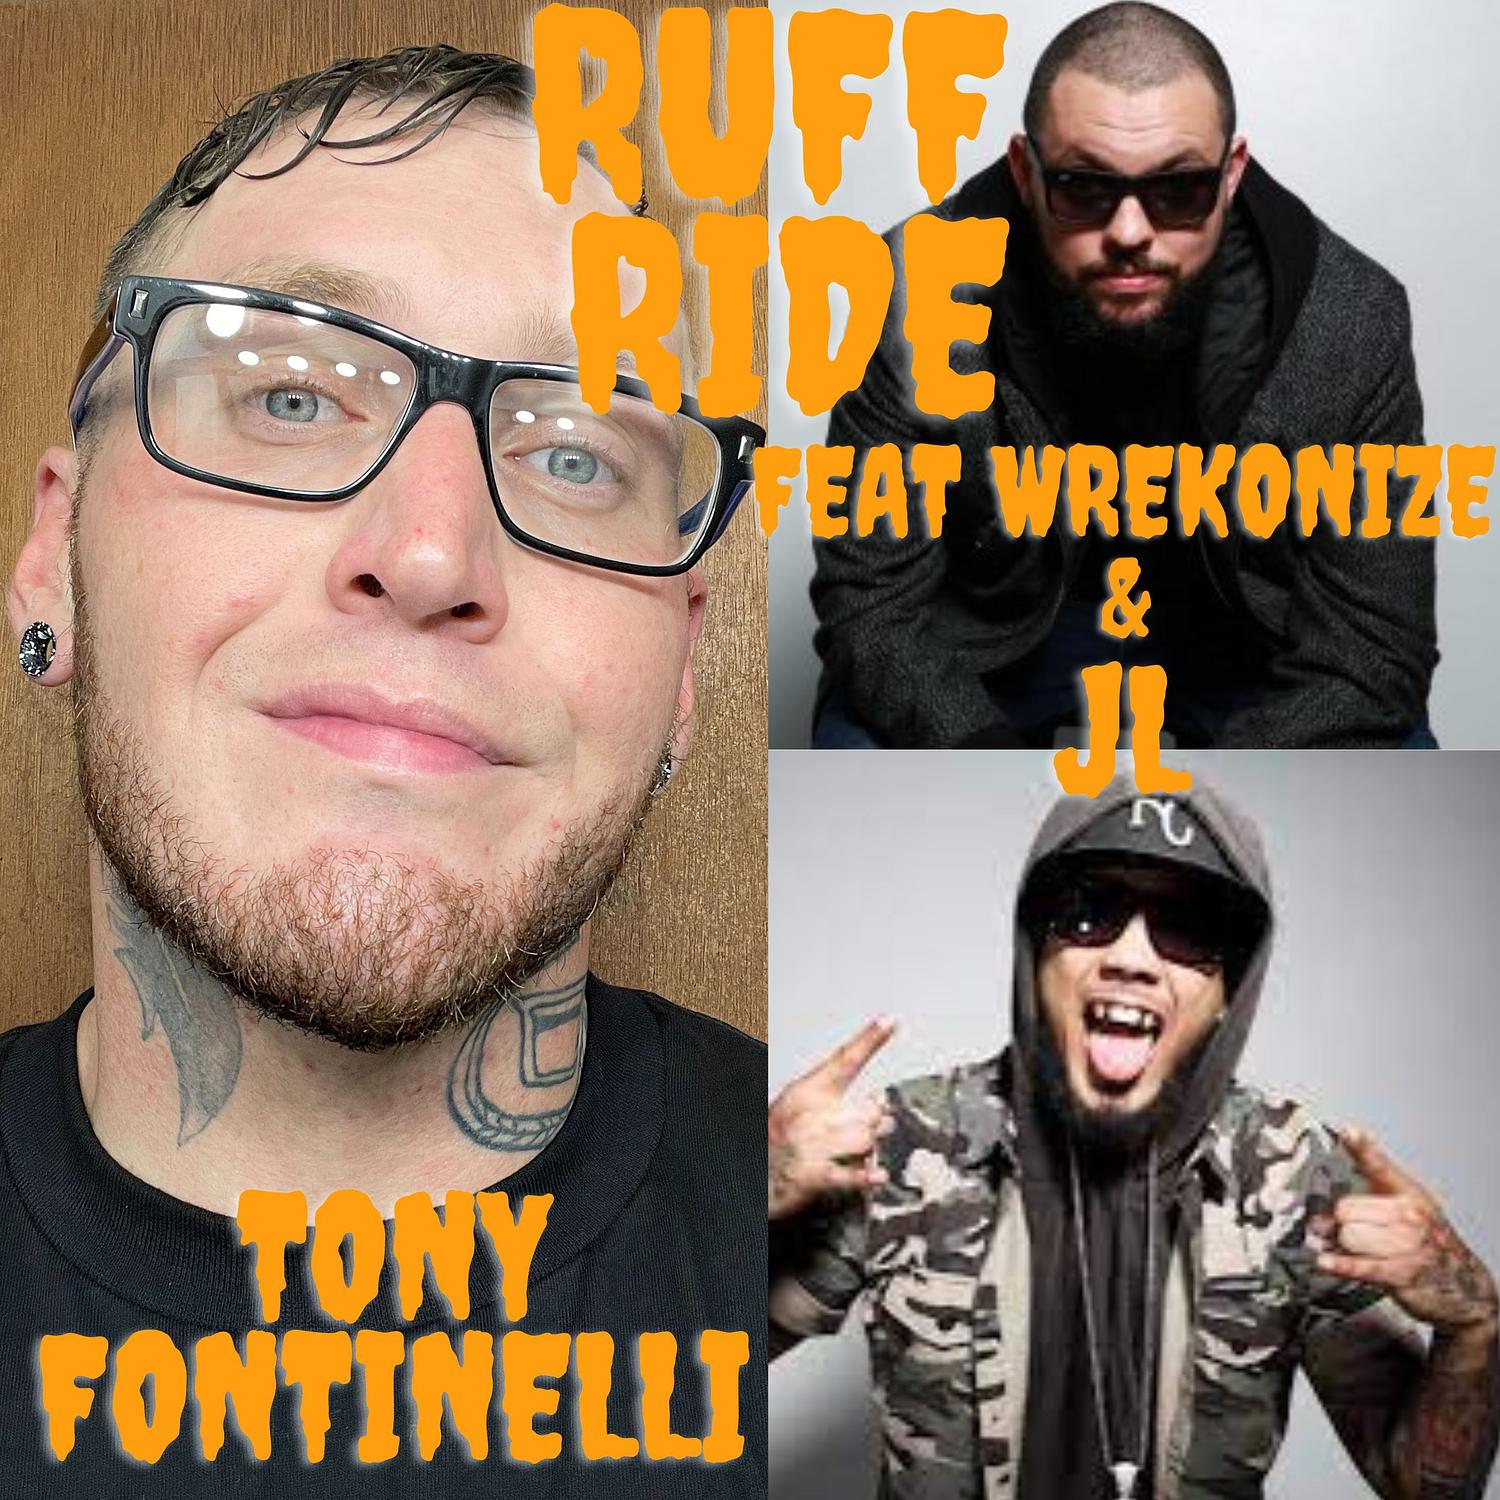 Tony Fontinelli - Ruff Ride